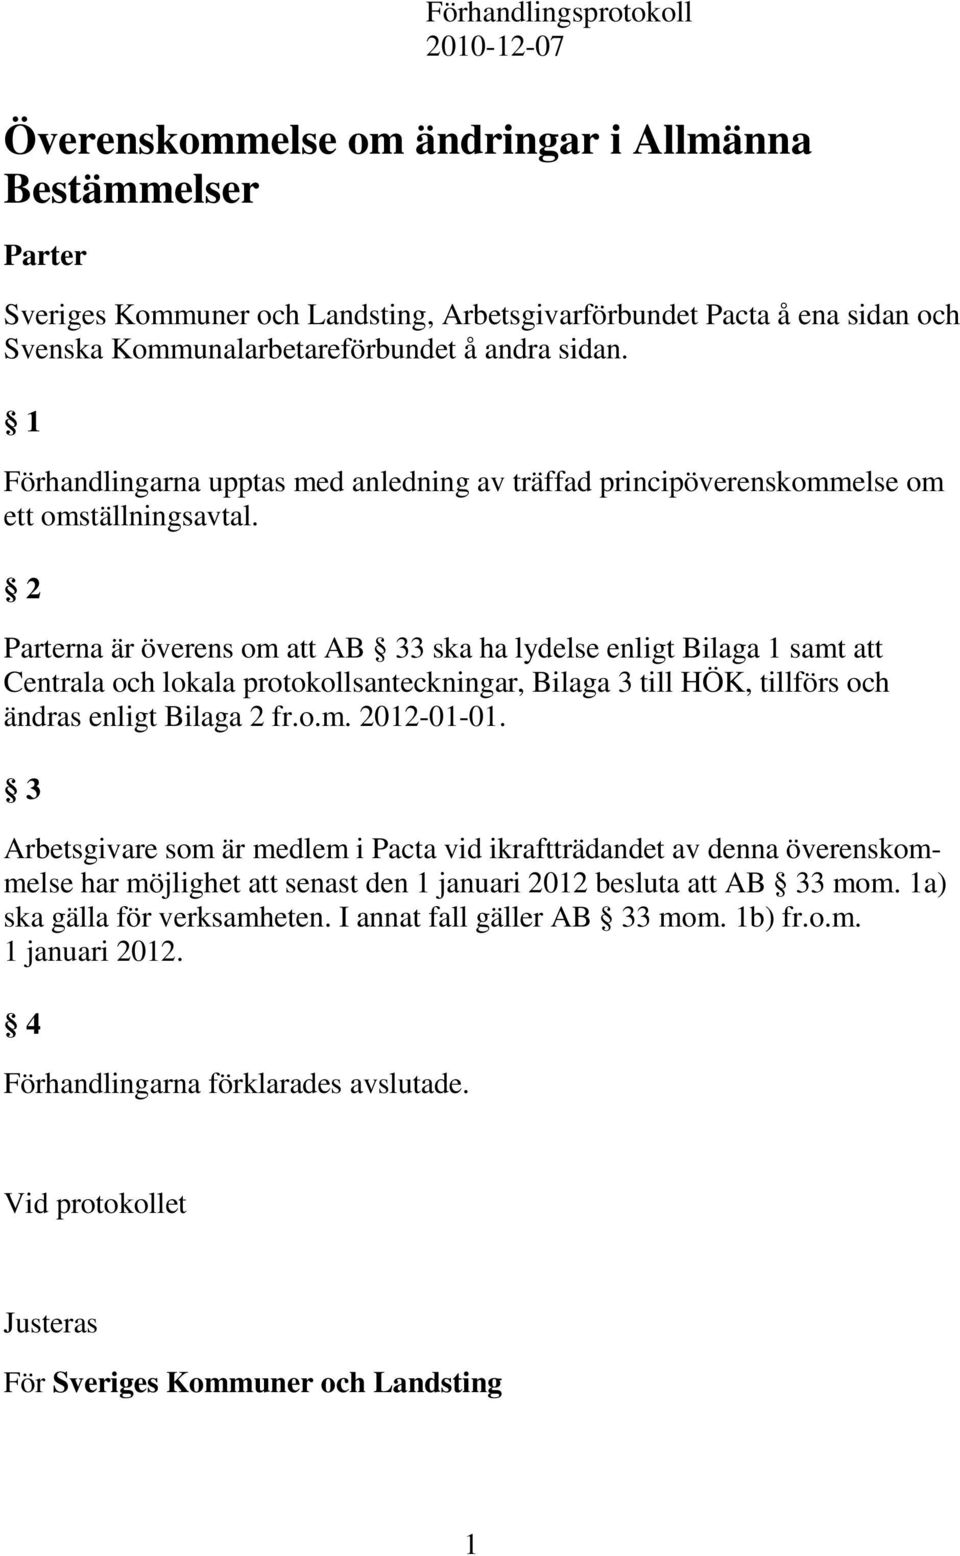 2 Parterna är överens om att AB 33 ska ha lydelse enligt Bilaga samt att Centrala och lokala protokollsanteckningar, Bilaga 3 till HÖK, tillförs och ändras enligt Bilaga 2 fr.o.m. 202-0-0.